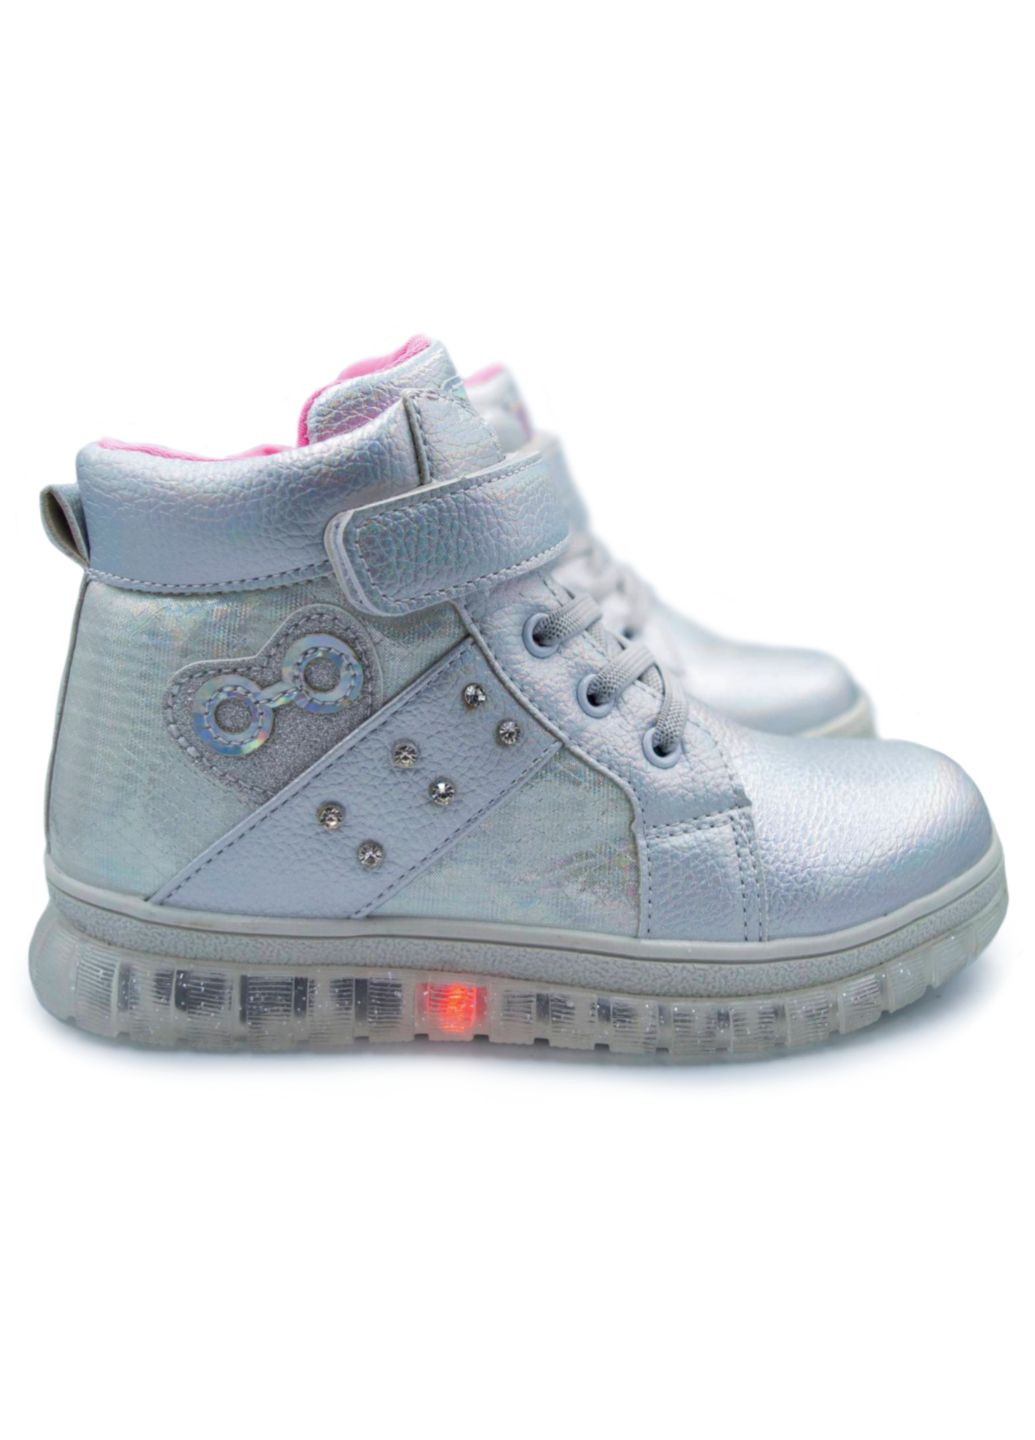 Демісезонне взуття для дівчинки, чобітки, черевики, ботинки, р.28-33 Clibee срібні